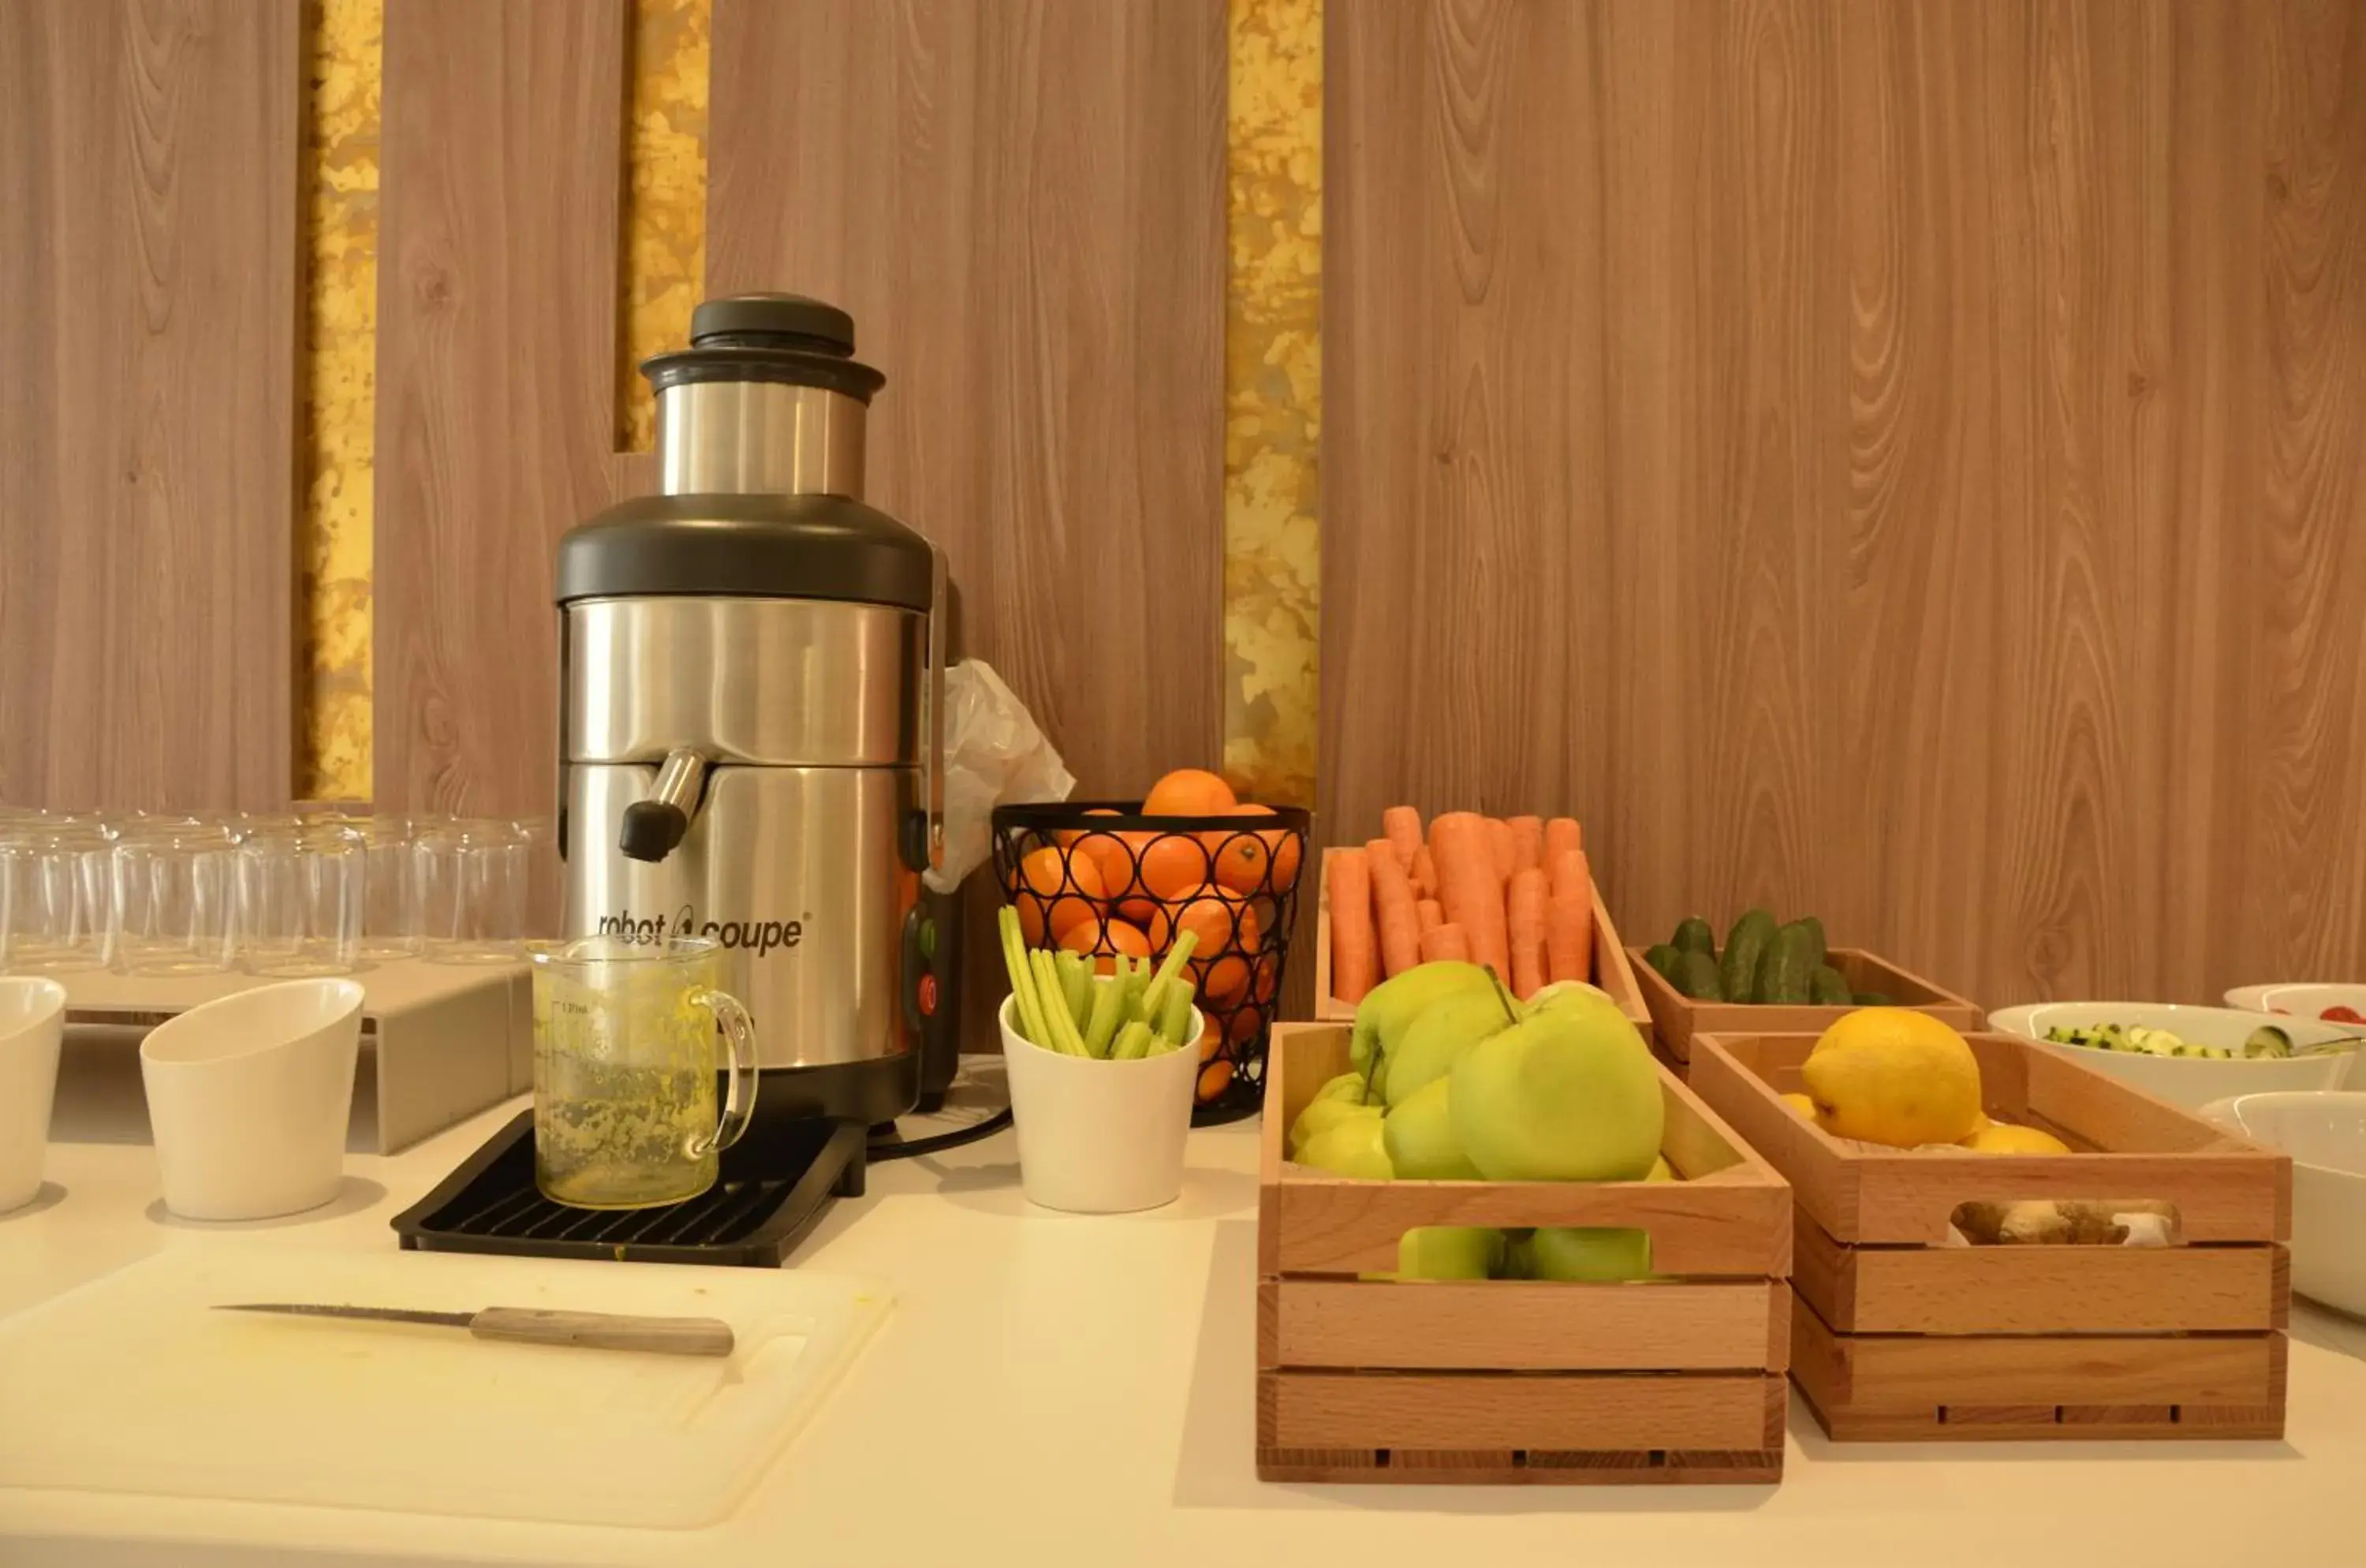 Buffet breakfast in Solho Hotel